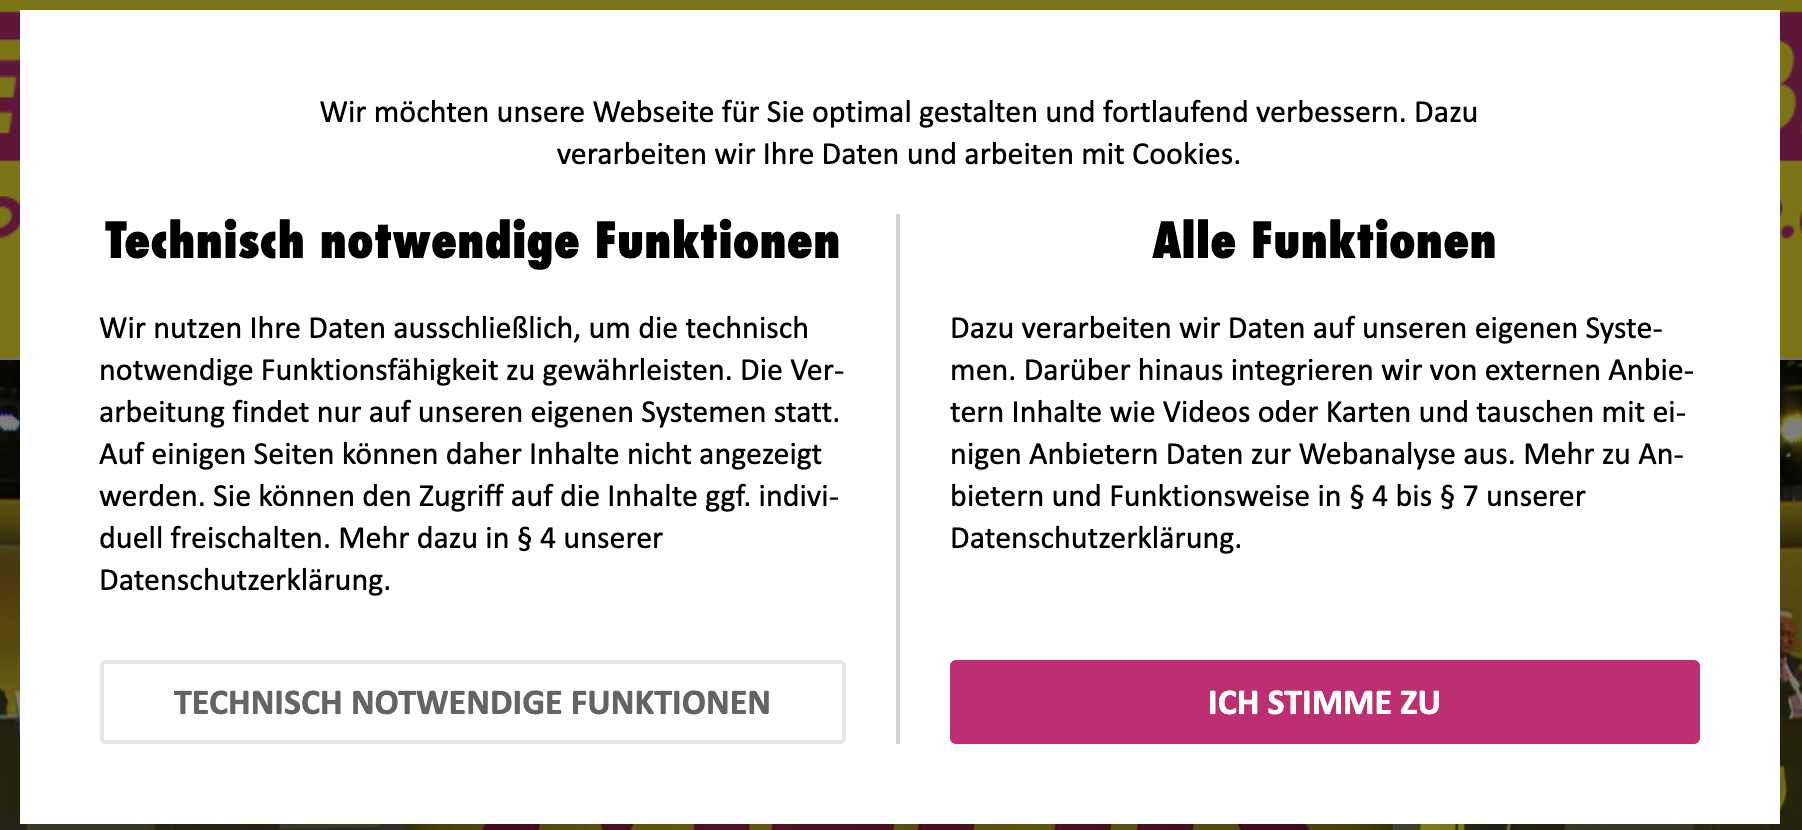 eher offensive Cookiewarnung auf der Webseite der FDP